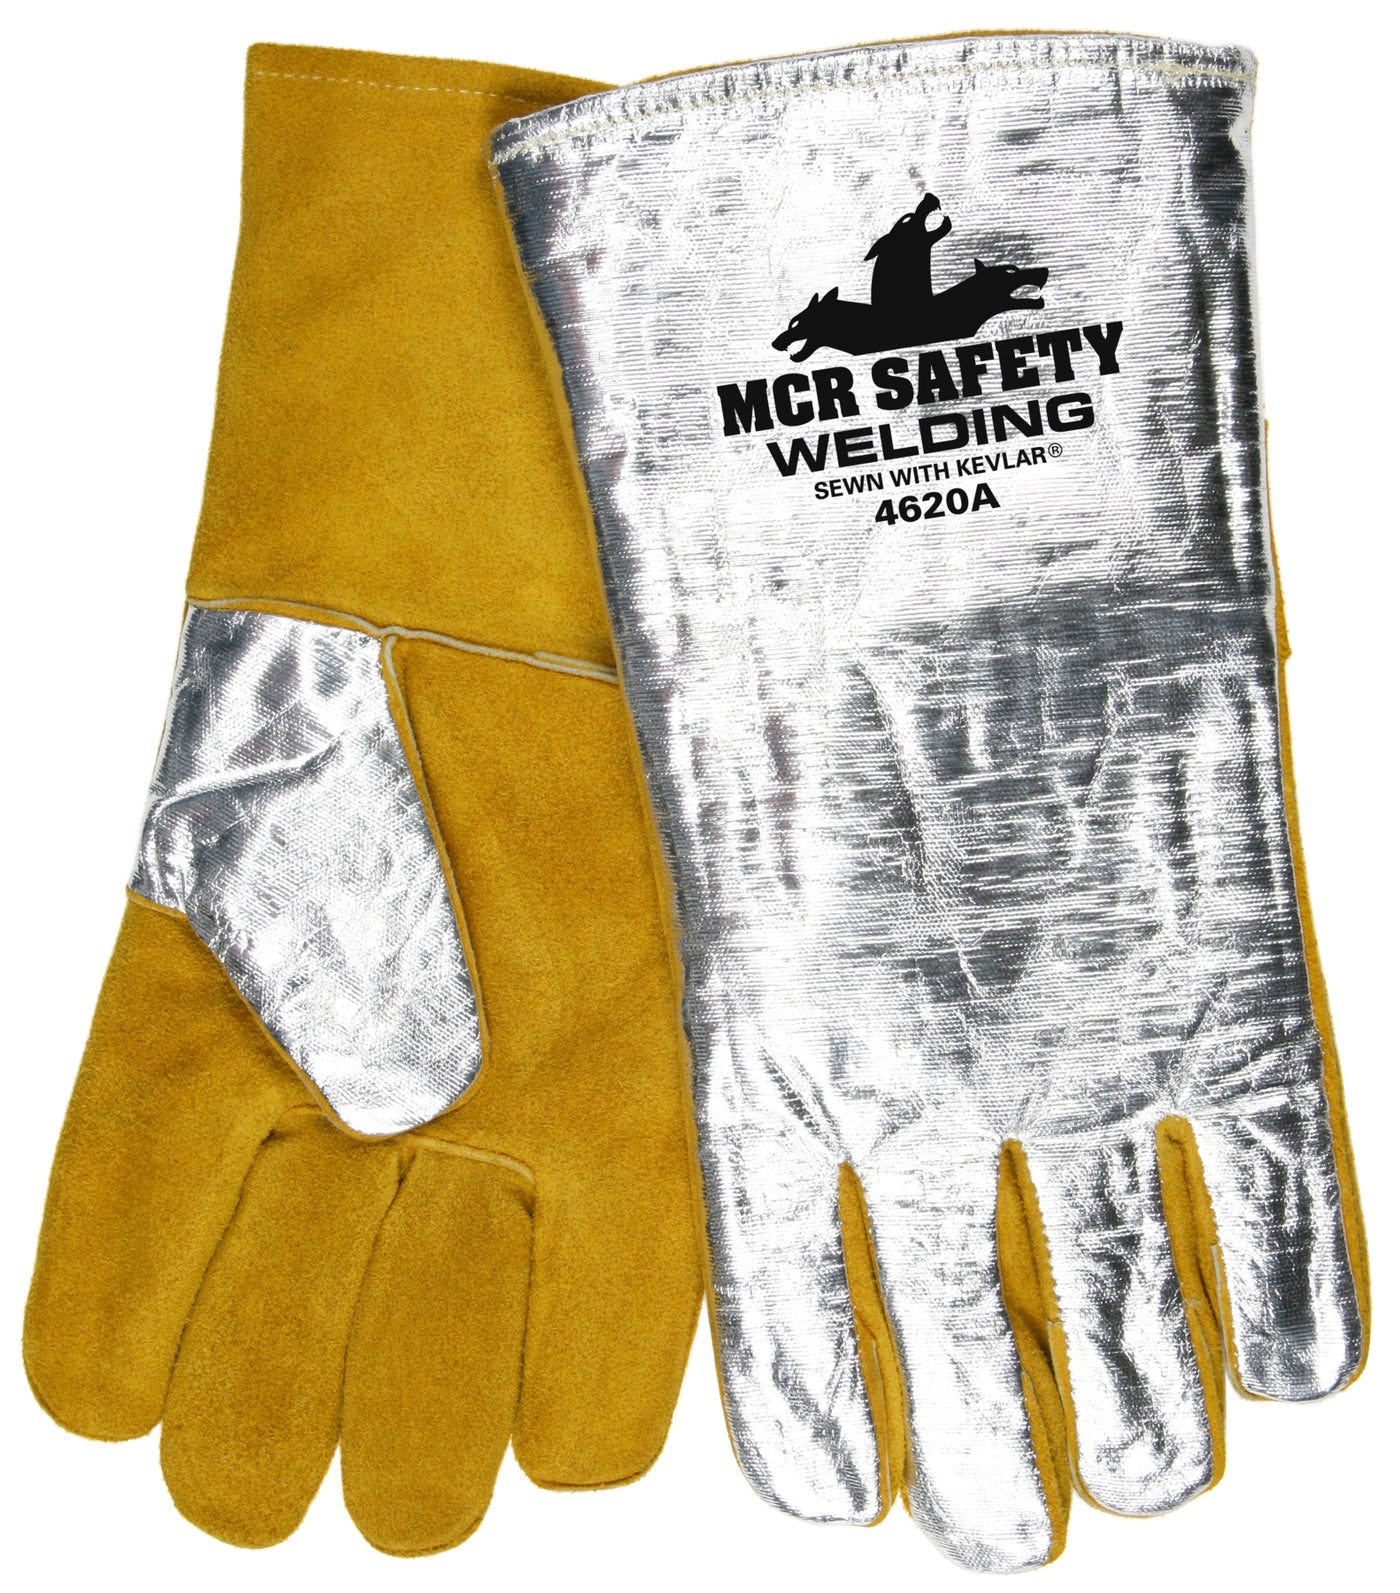 4620AXL - MCR Safety Welding